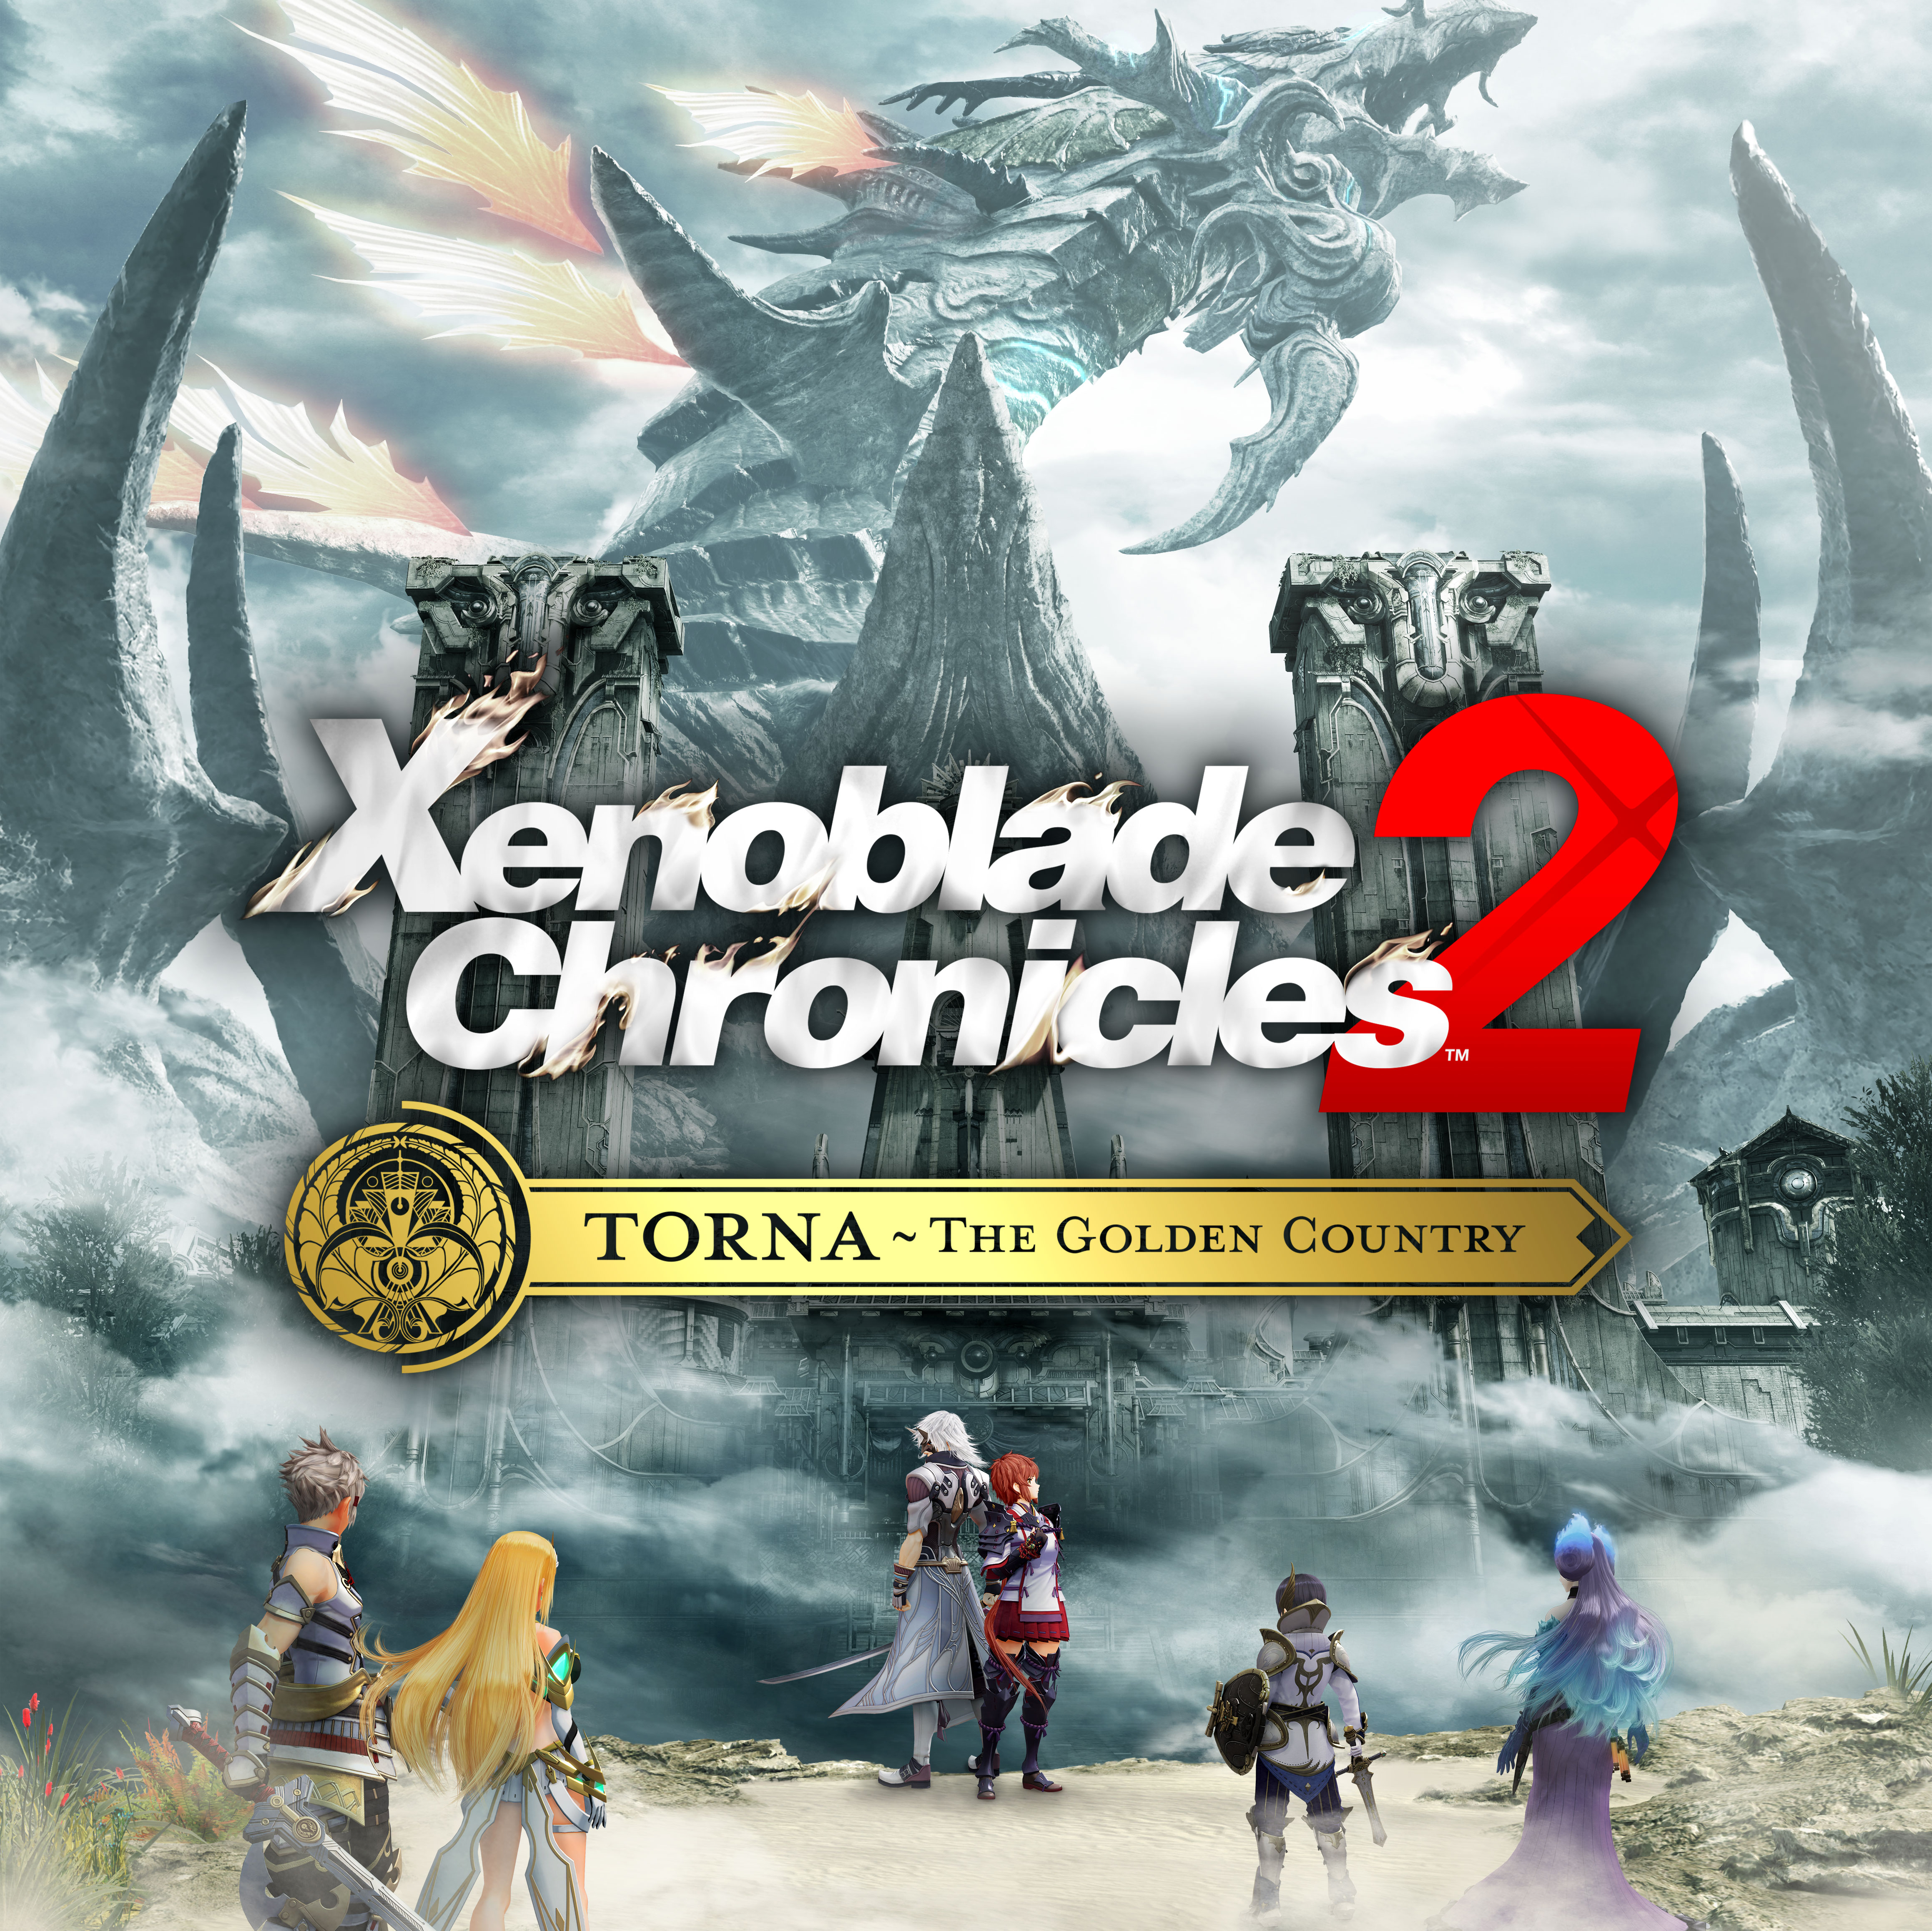 Tetsuya Takahashi, de Monolith Soft, revela más detalles sobre Xenoblade Chronicles 2: Torna - The Golden Country